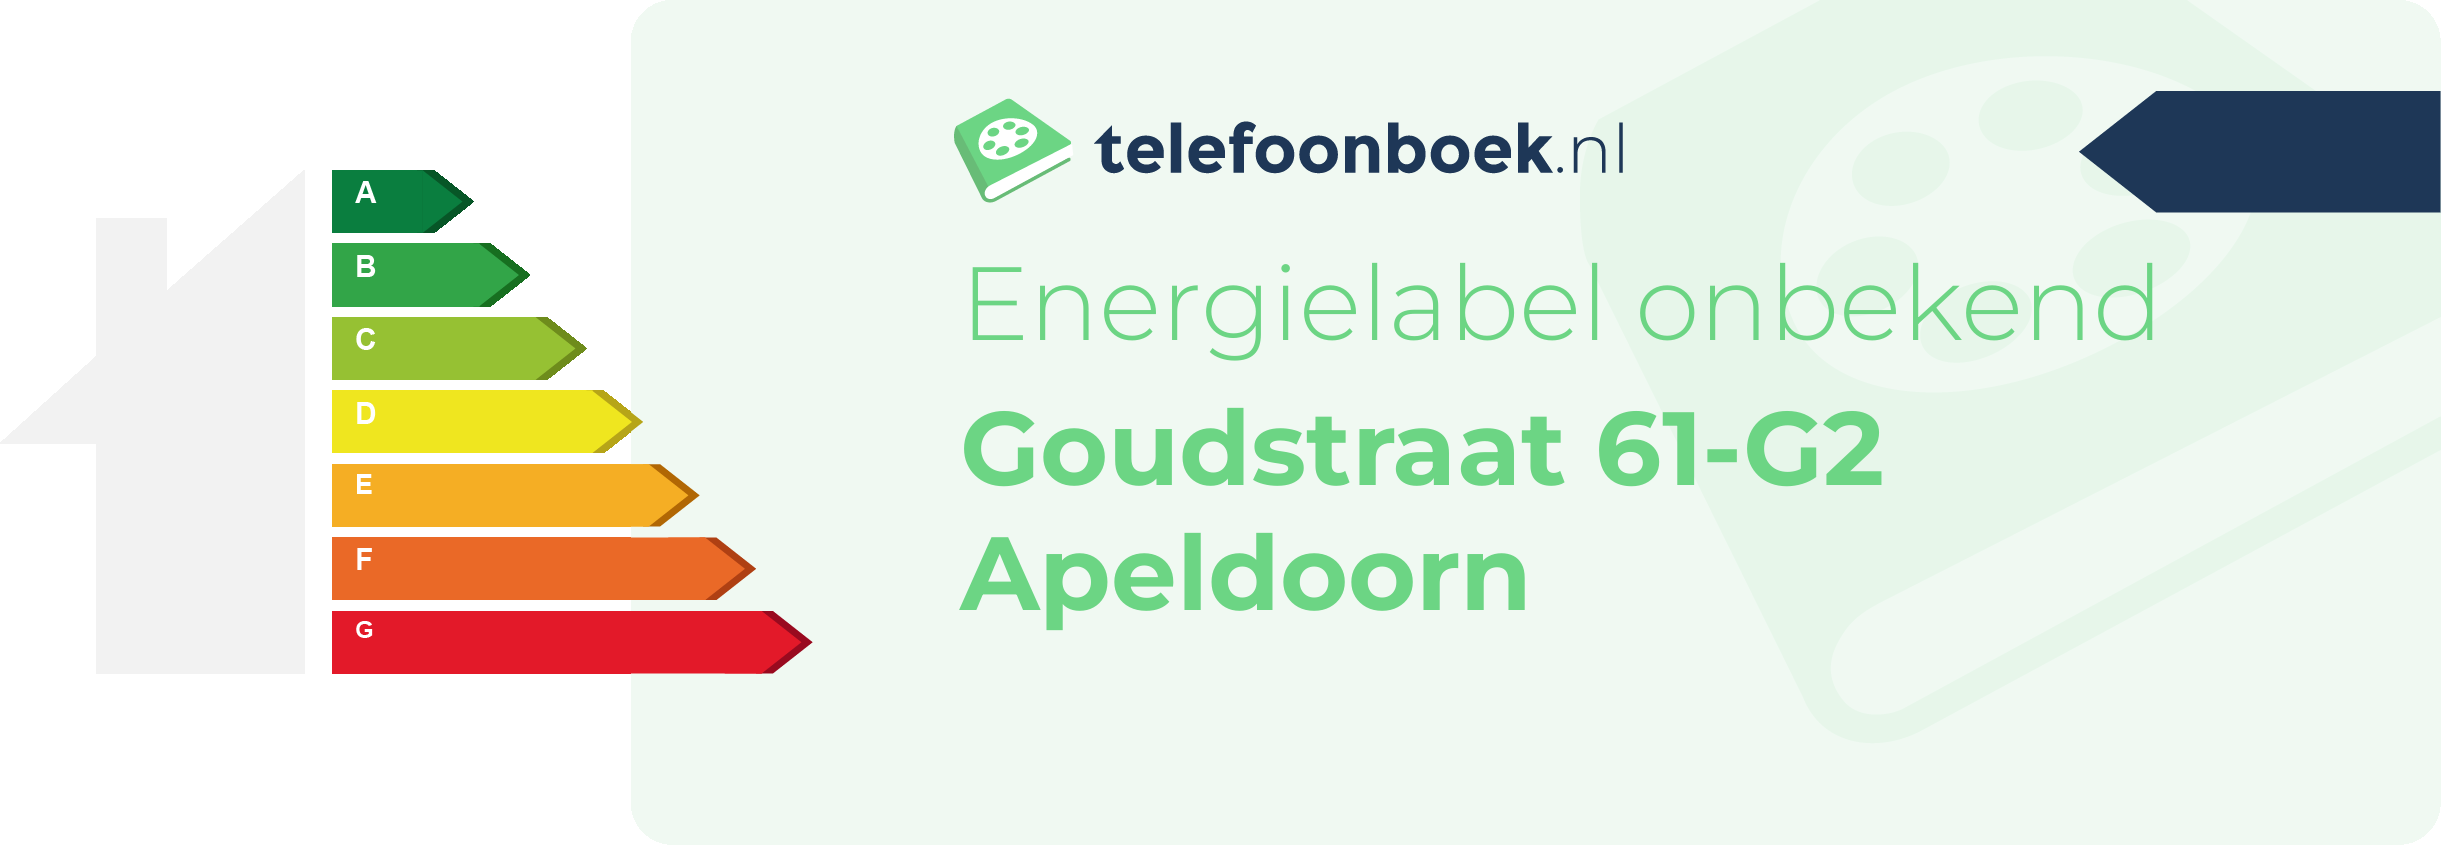 Energielabel Goudstraat 61-G2 Apeldoorn